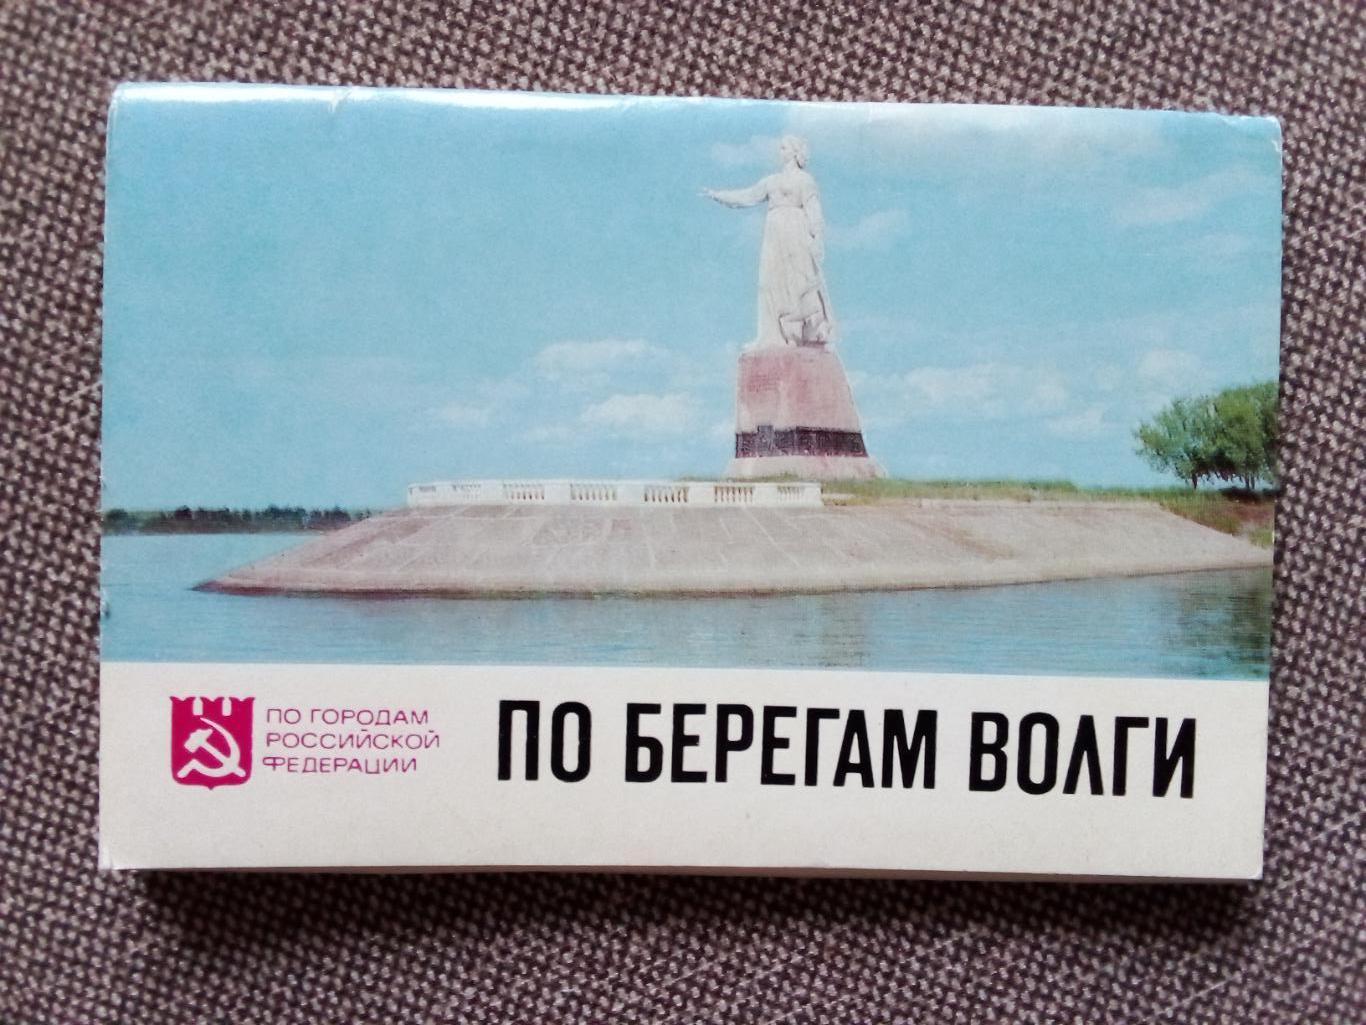 По городам РСФСР : По берегам Волги 1977 г. полный набор - 16 открыток (Флот)